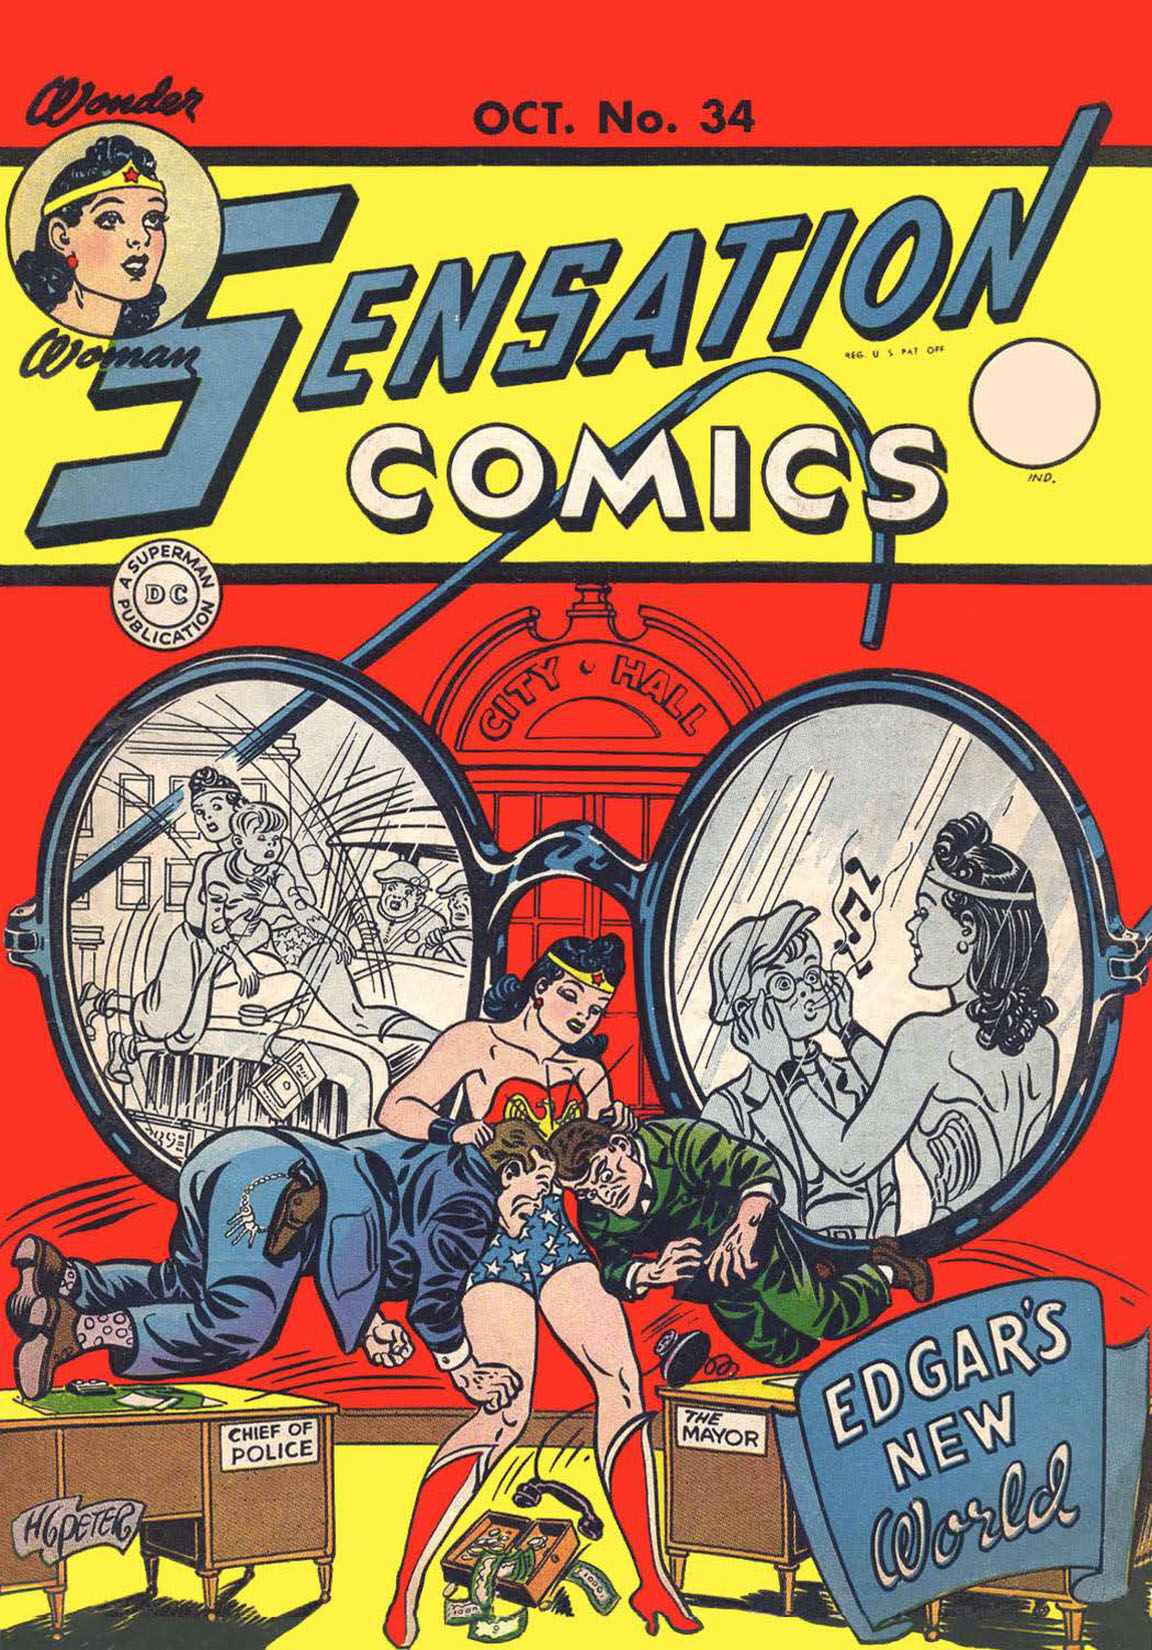 Sensation Comics #34 preview images